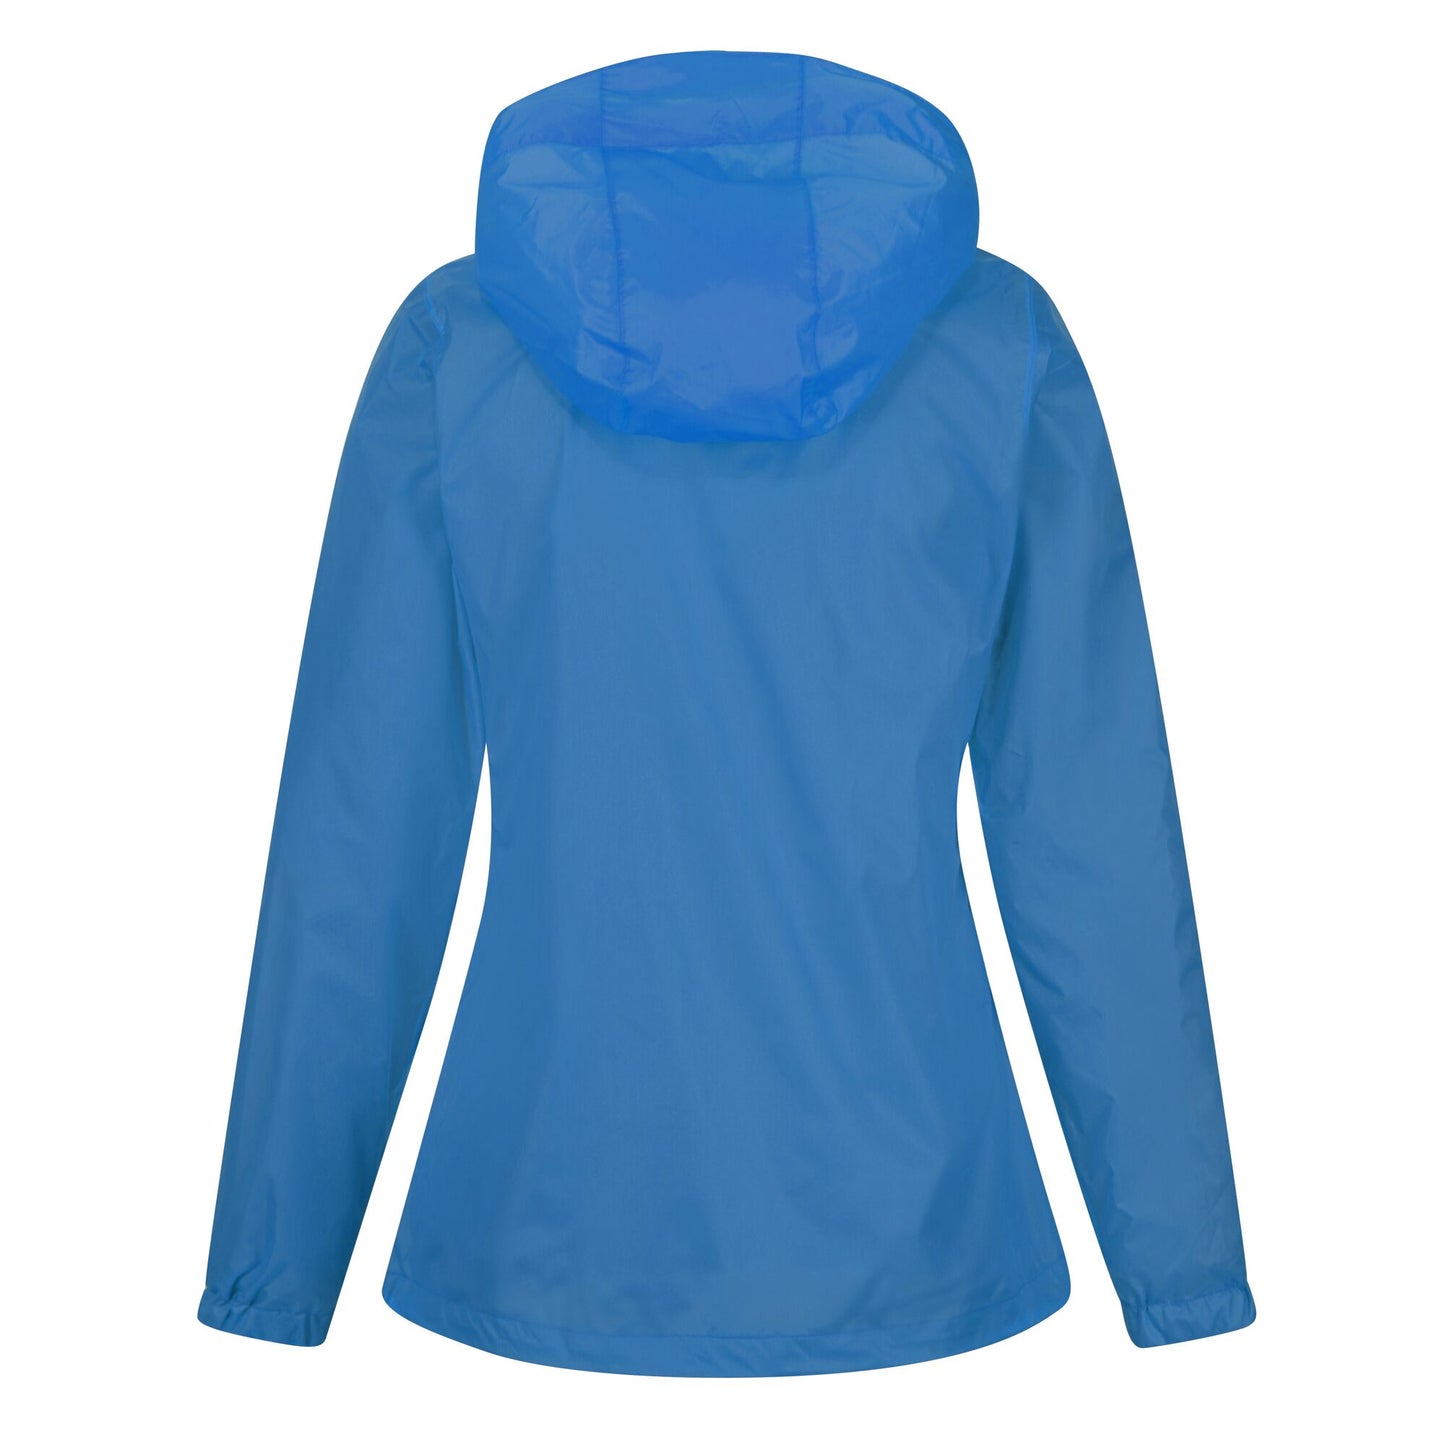 Regatta Corinne IV Women's Waterproof Jacket - Sonic Blue